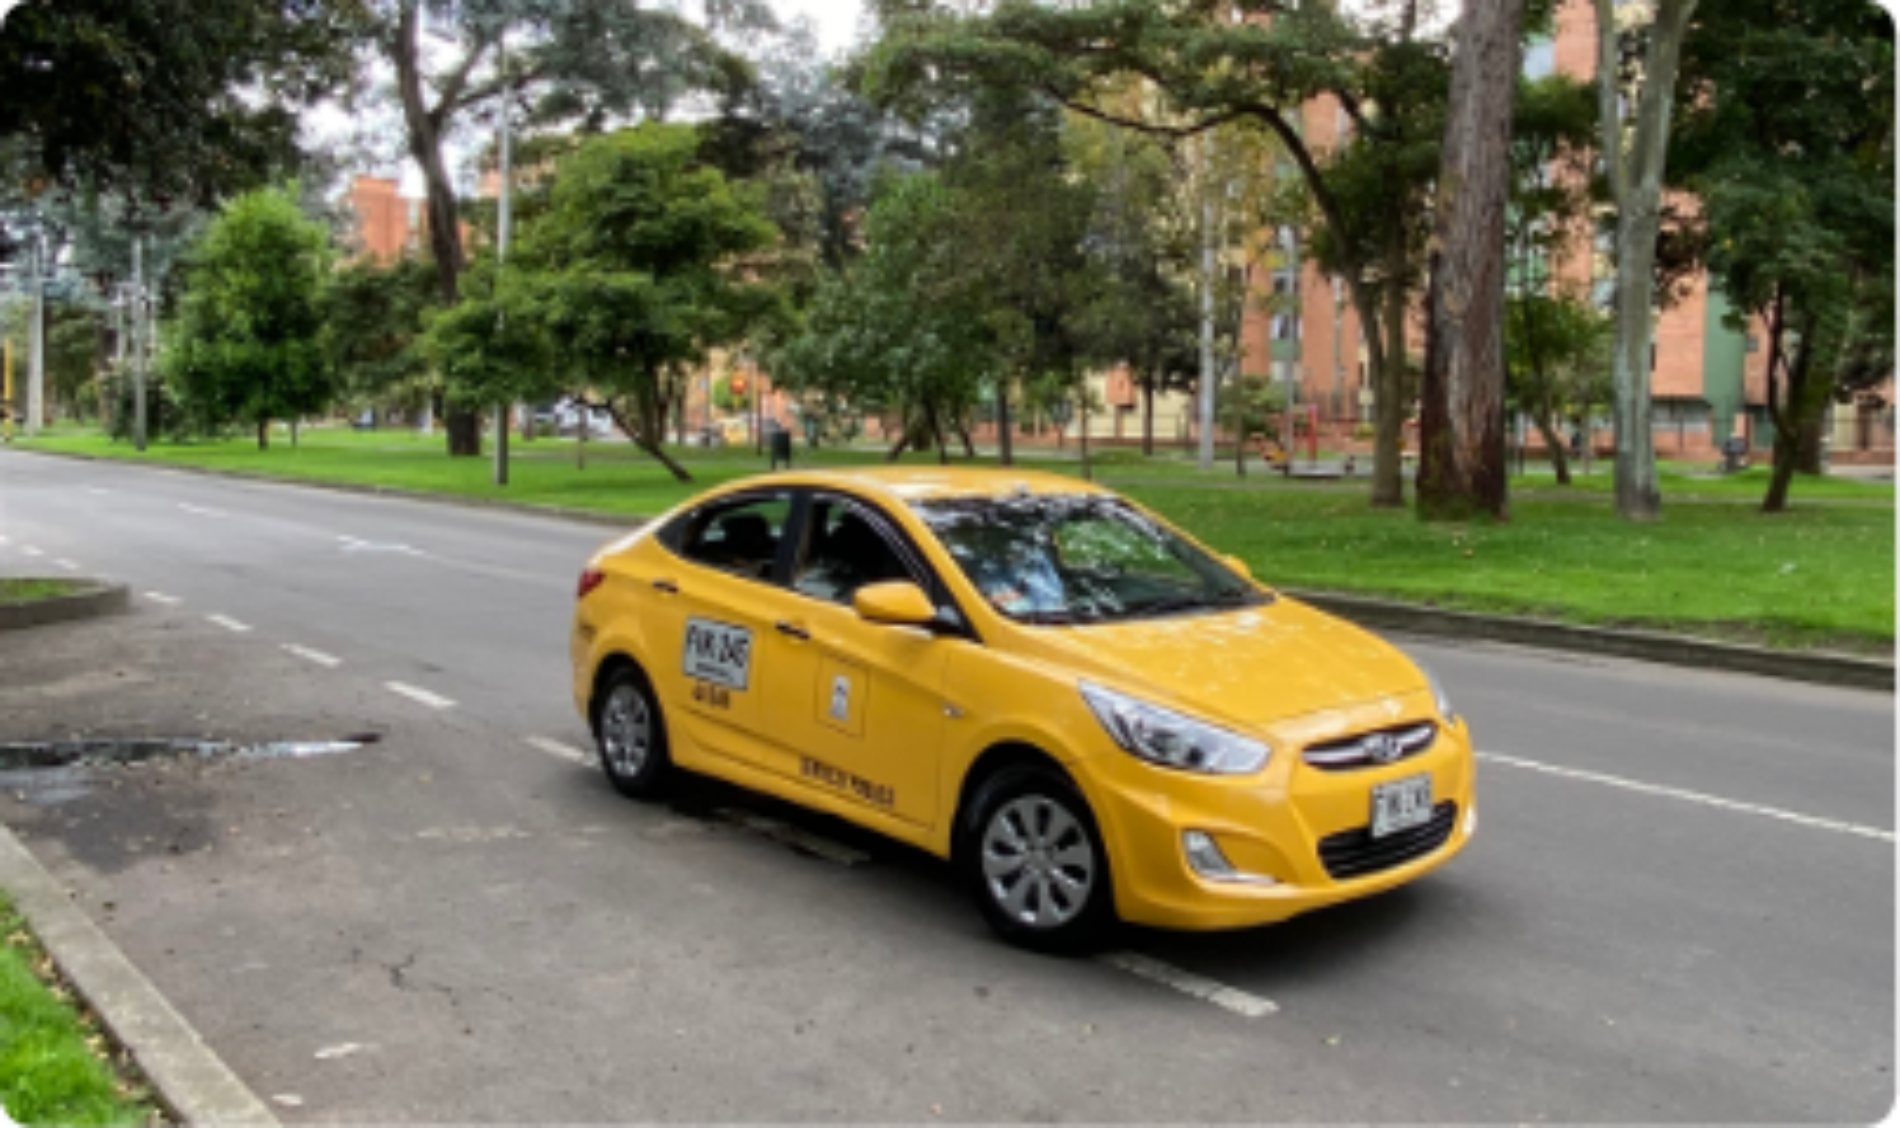 Transite seguro en la vía: siga estas recomendaciones de Taxis Libres